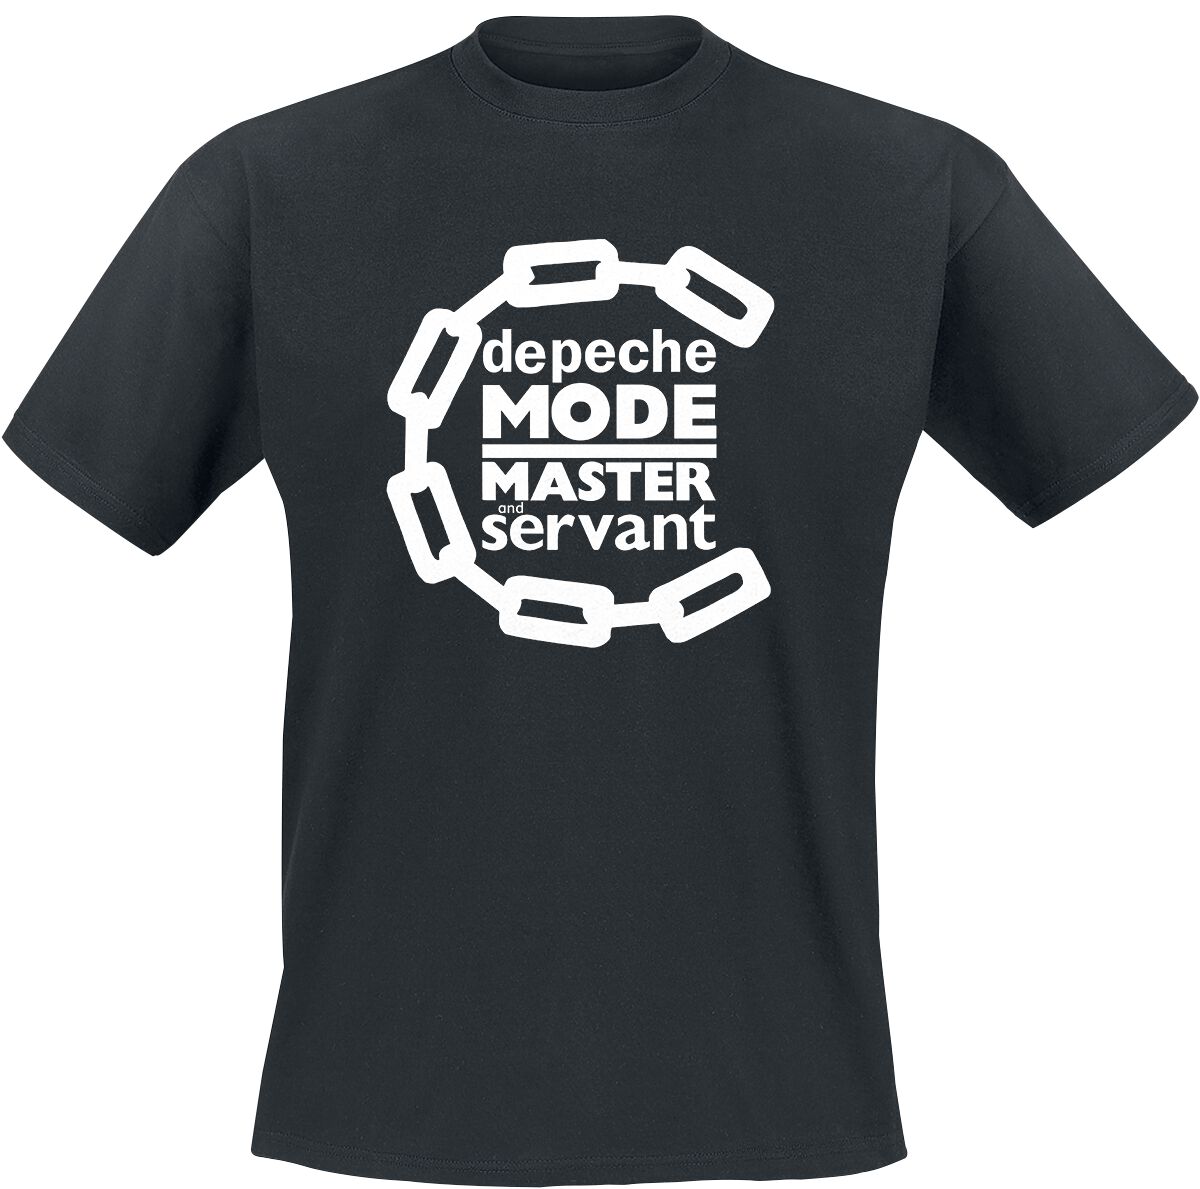 Depeche Mode T-Shirt - Master And Servant - S bis 4XL - für Männer - Größe 4XL - schwarz  - Lizenziertes Merchandise!